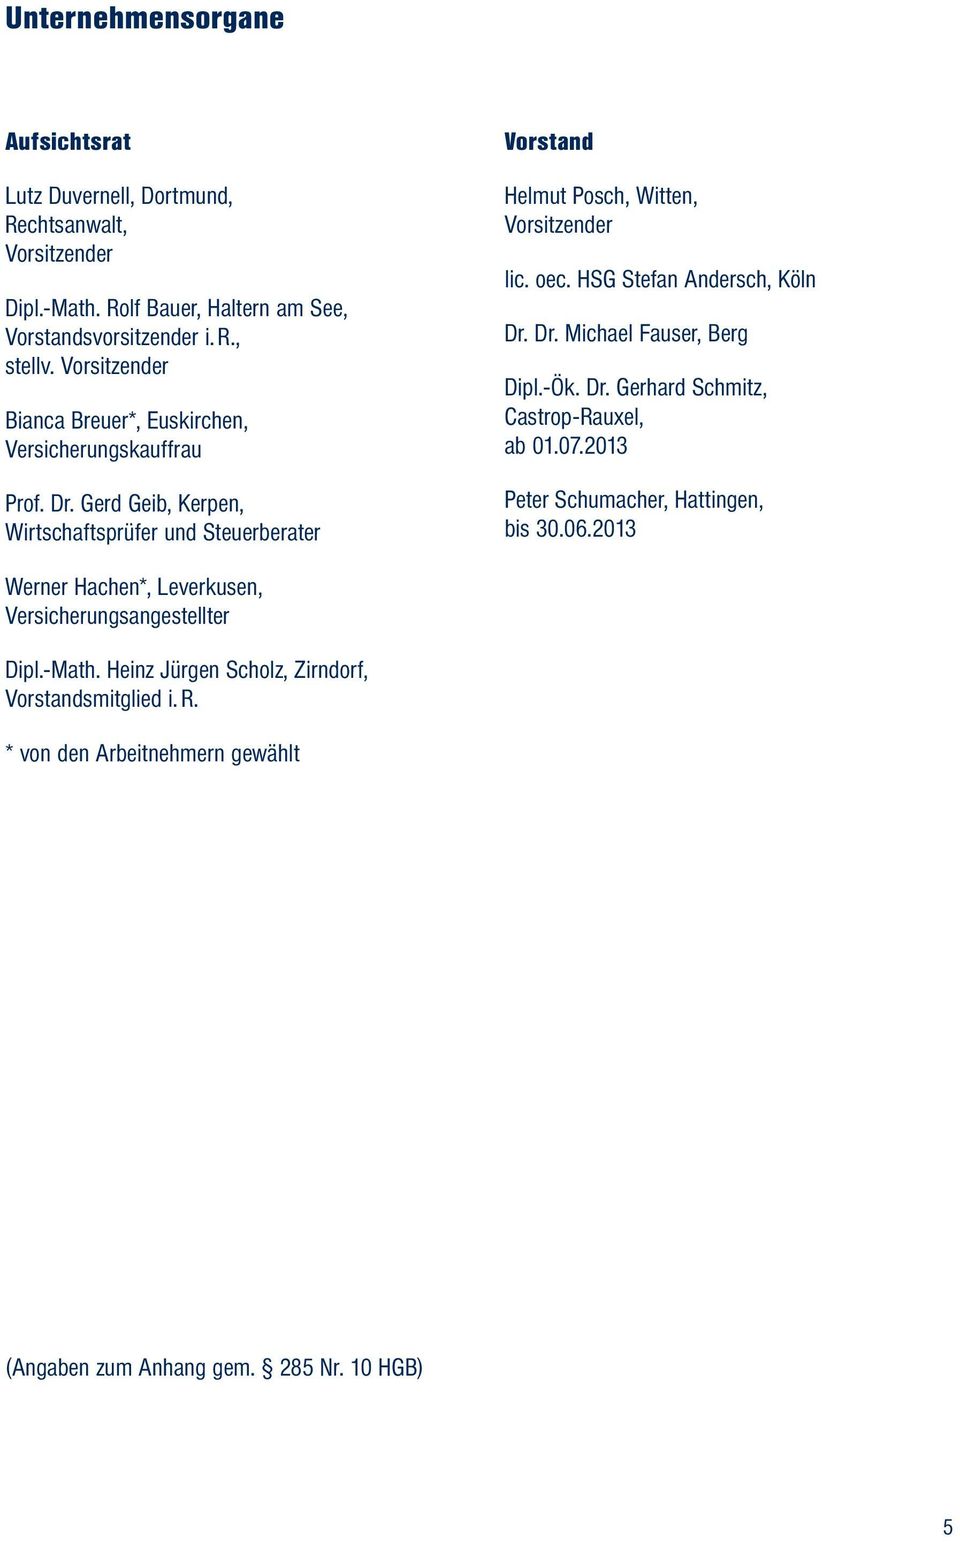 Gerd Geib, Kerpen, Wirtschaftsprüfer und Steuerberater Vorstand Helmut Posch, Witten, Vorsitzender lic. oec. HSG Stefan Andersch, Köln Dr. Dr. Michael Fauser, Berg Dipl.-Ök.